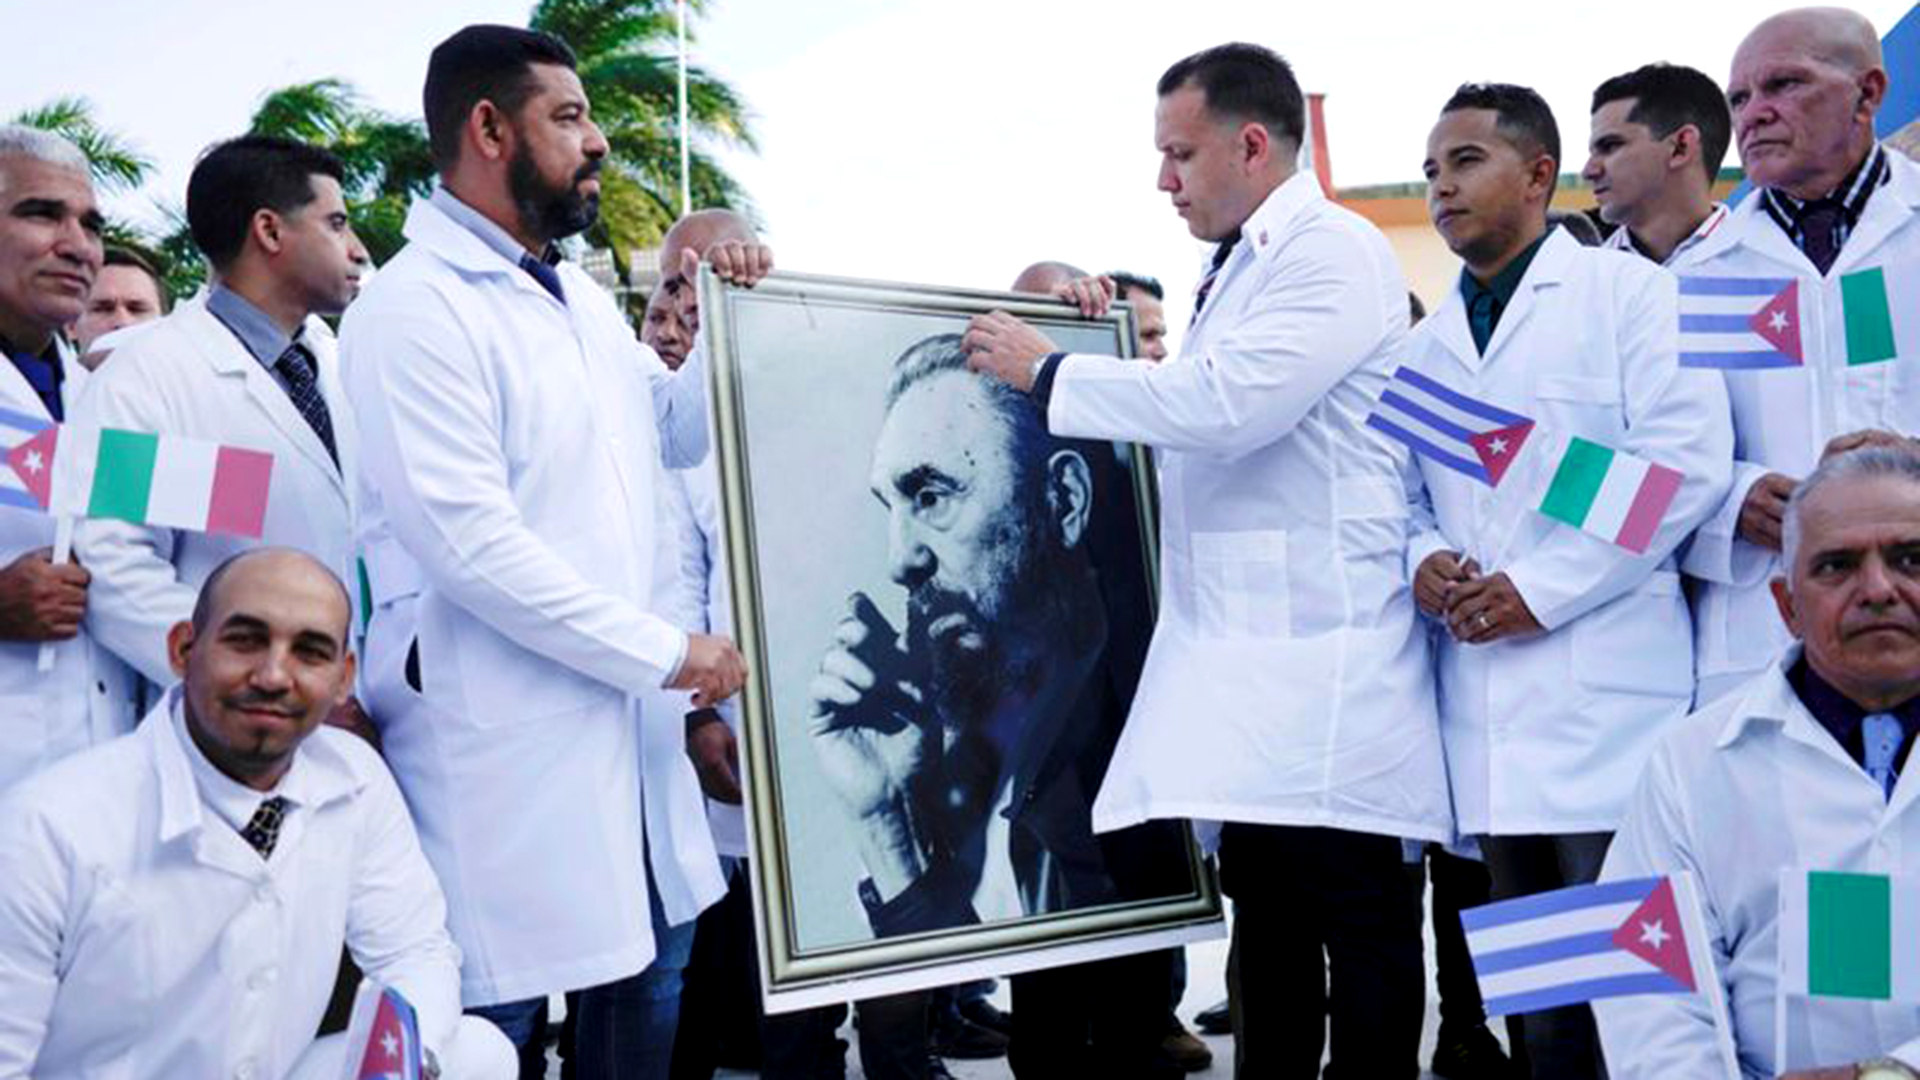 Médicos cubanos sostienen una imagen del fallecido dictador cubano Fidel Castro durante una ceremonia de despedida antes de partir a Italia para ayudar al país europeo, en medio de la pandemia de coronavirus, en La Habana, Cuba. 21 de marzo de 2020 (REUTERS/Alexandre Meneghini)
